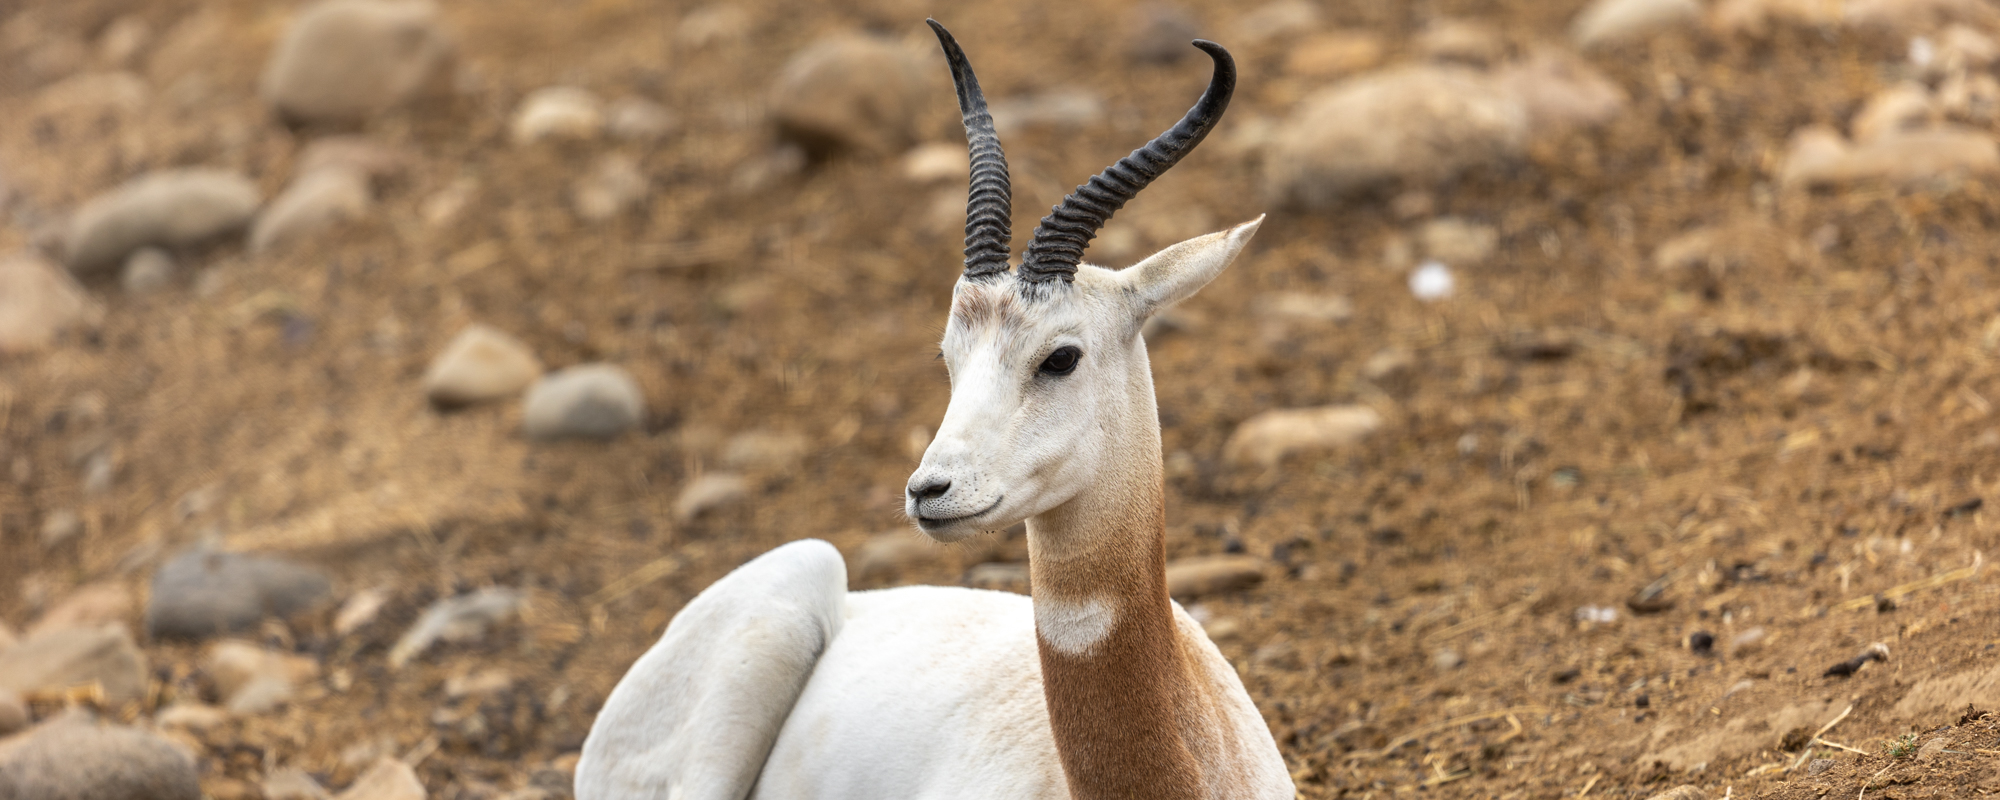 Gazelle, Dama - Safari West